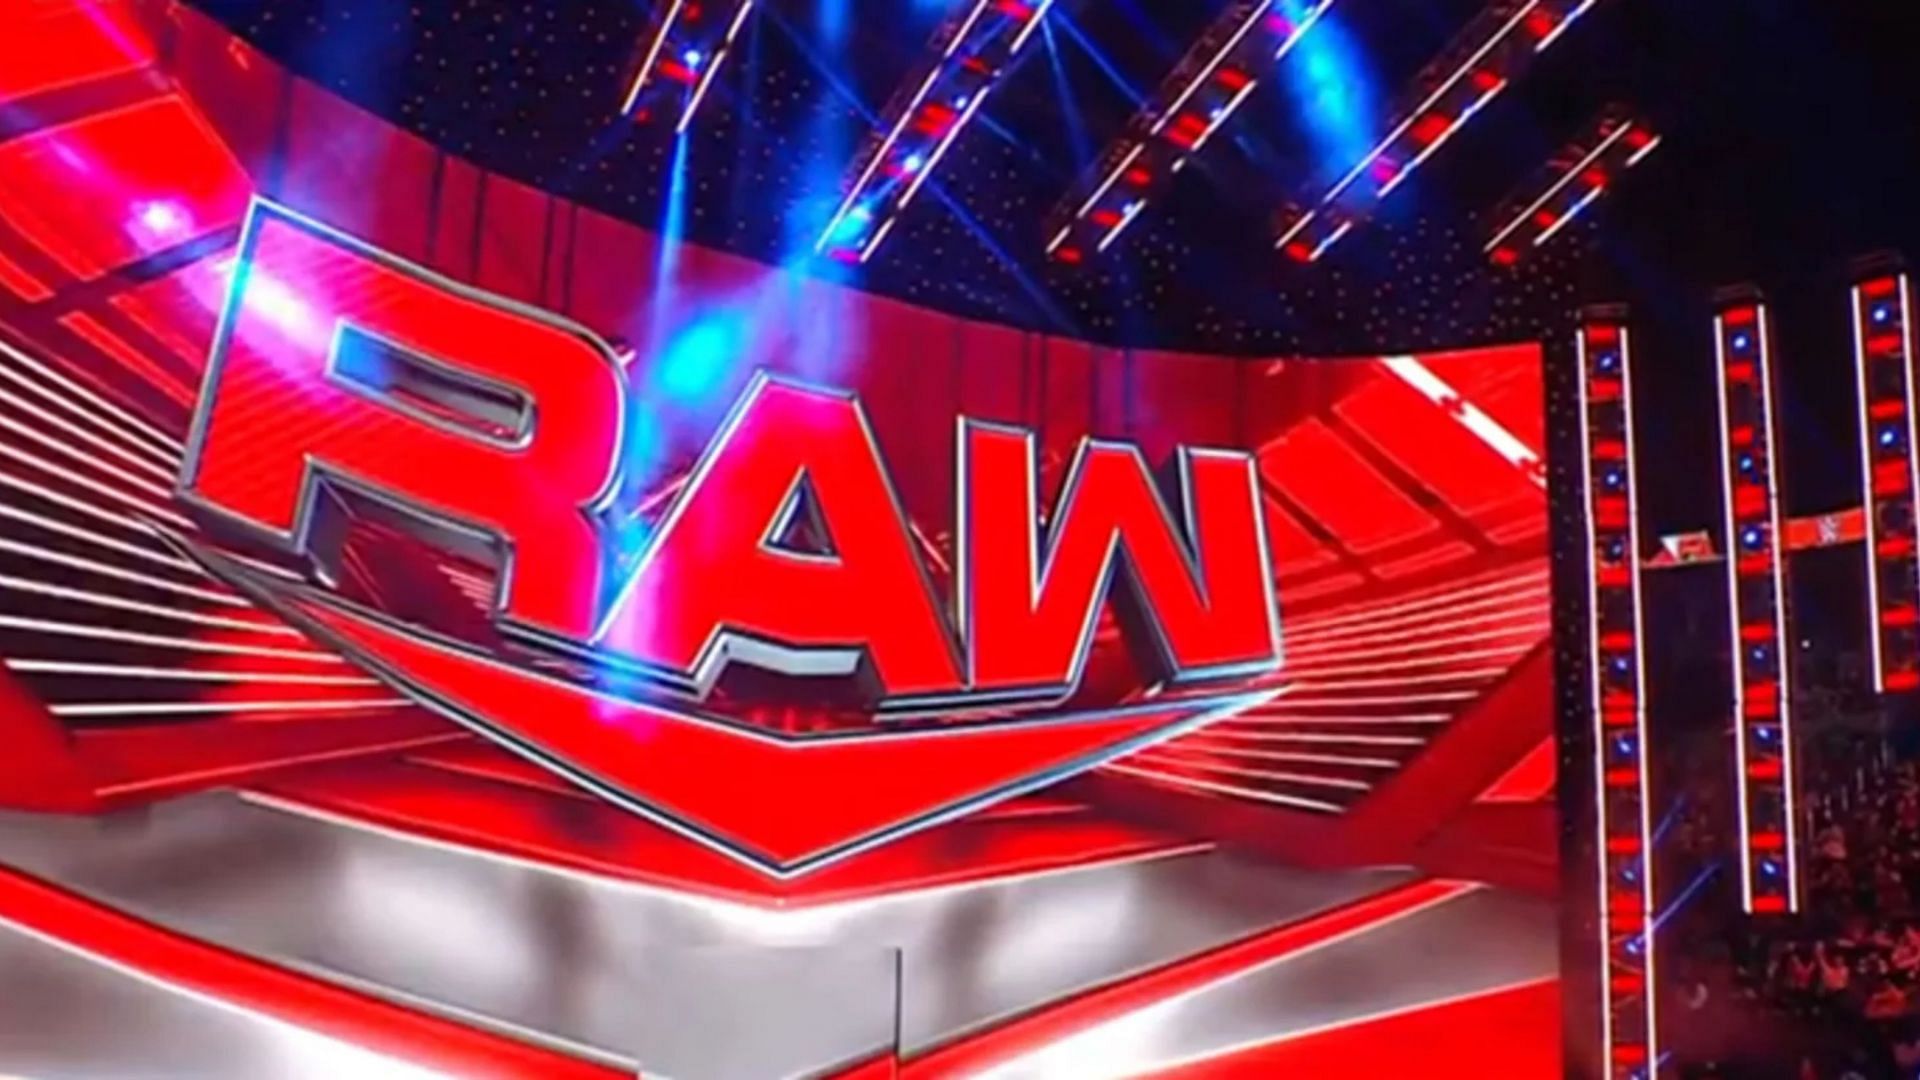 Konnan is not a fan of two top WWE RAW stars